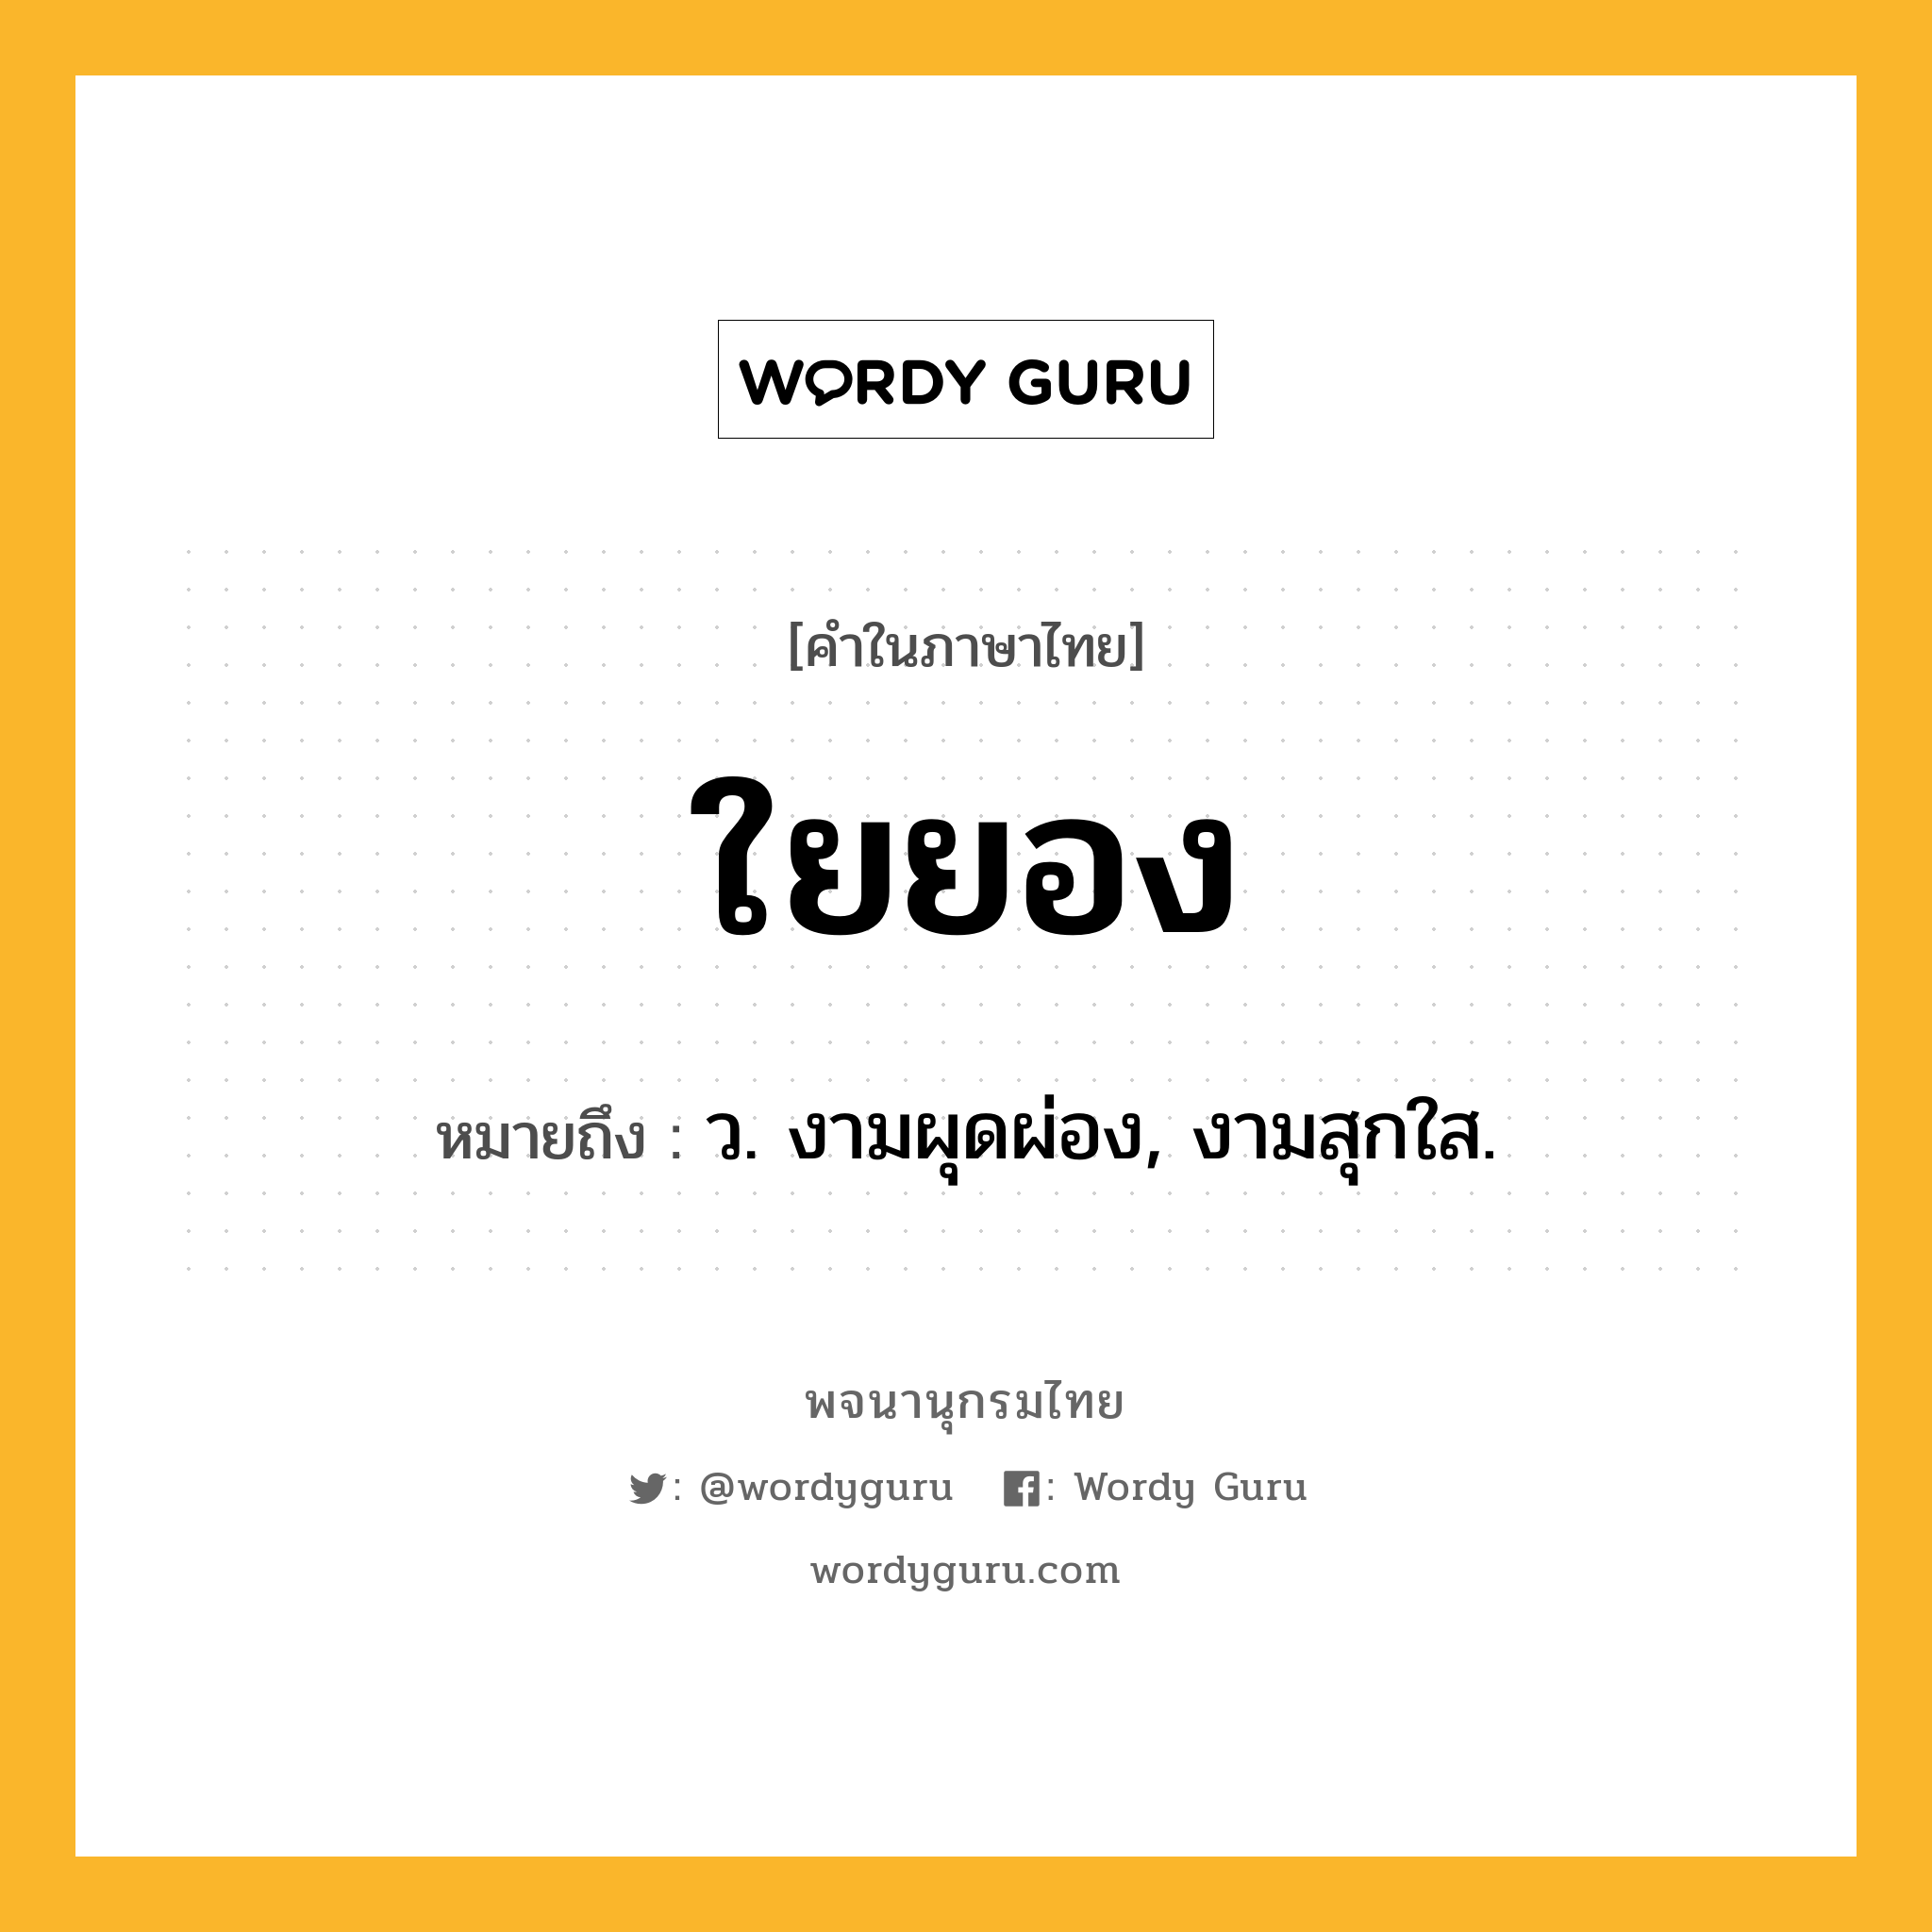 ใยยอง ความหมาย หมายถึงอะไร?, คำในภาษาไทย ใยยอง หมายถึง ว. งามผุดผ่อง, งามสุกใส.